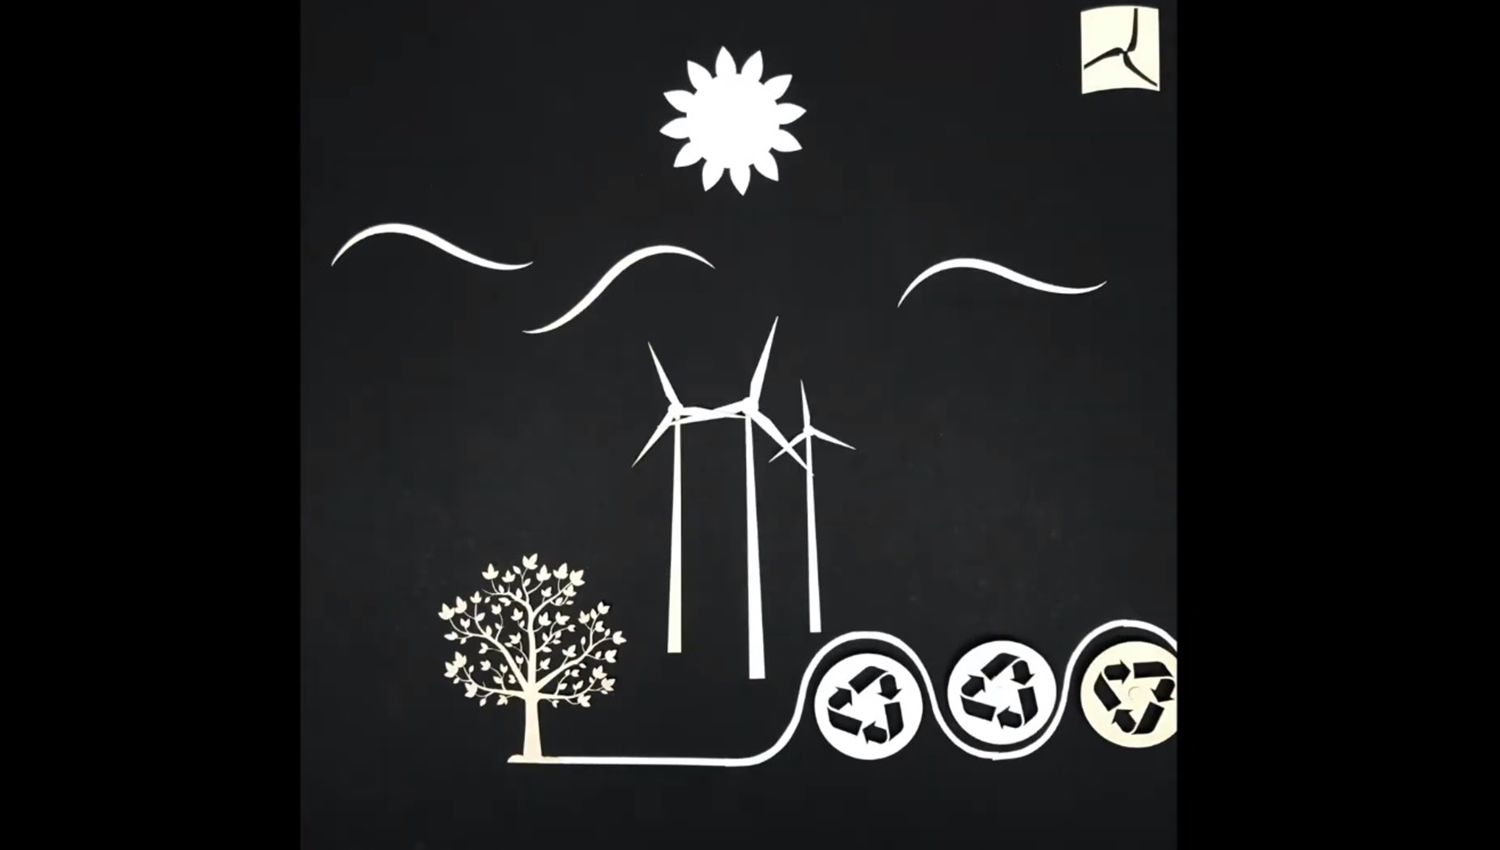 Edinas paper animáció a fenntartható papírfelhasználásról